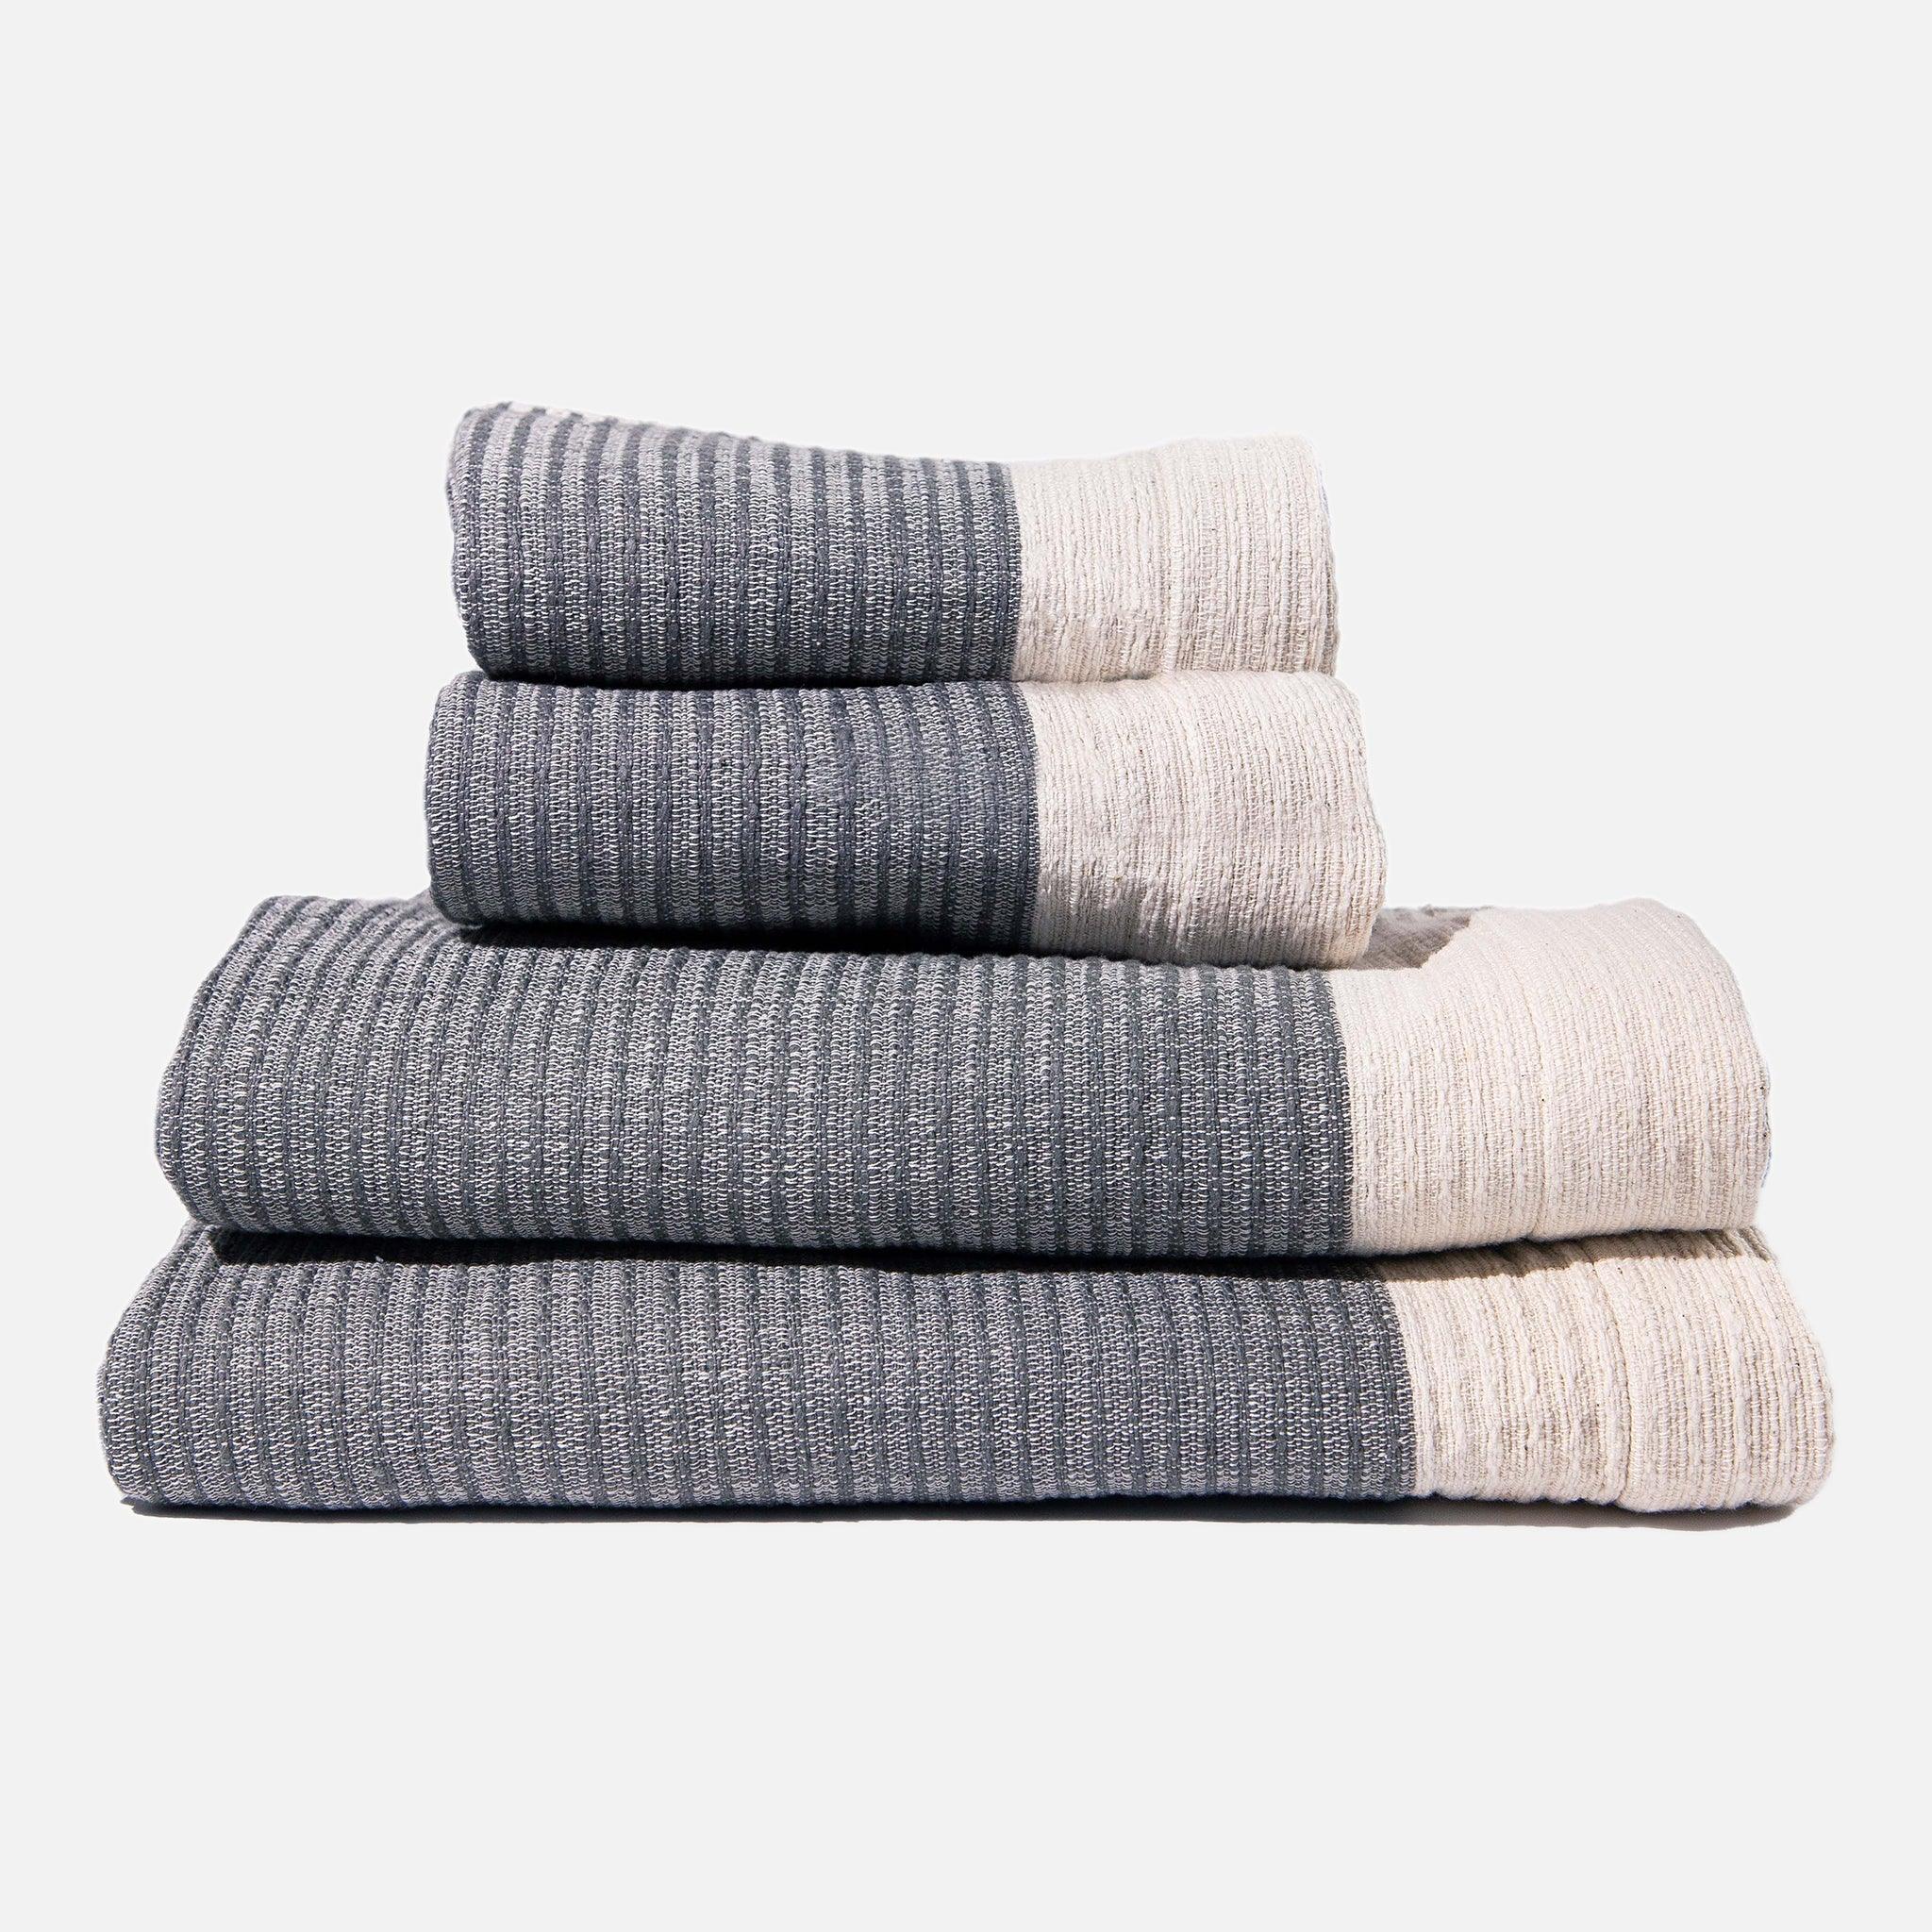 https://54kibo.com/cdn/shop/products/addis-gray-guest-hand-towels-set-2-811586.jpg?v=1685589334